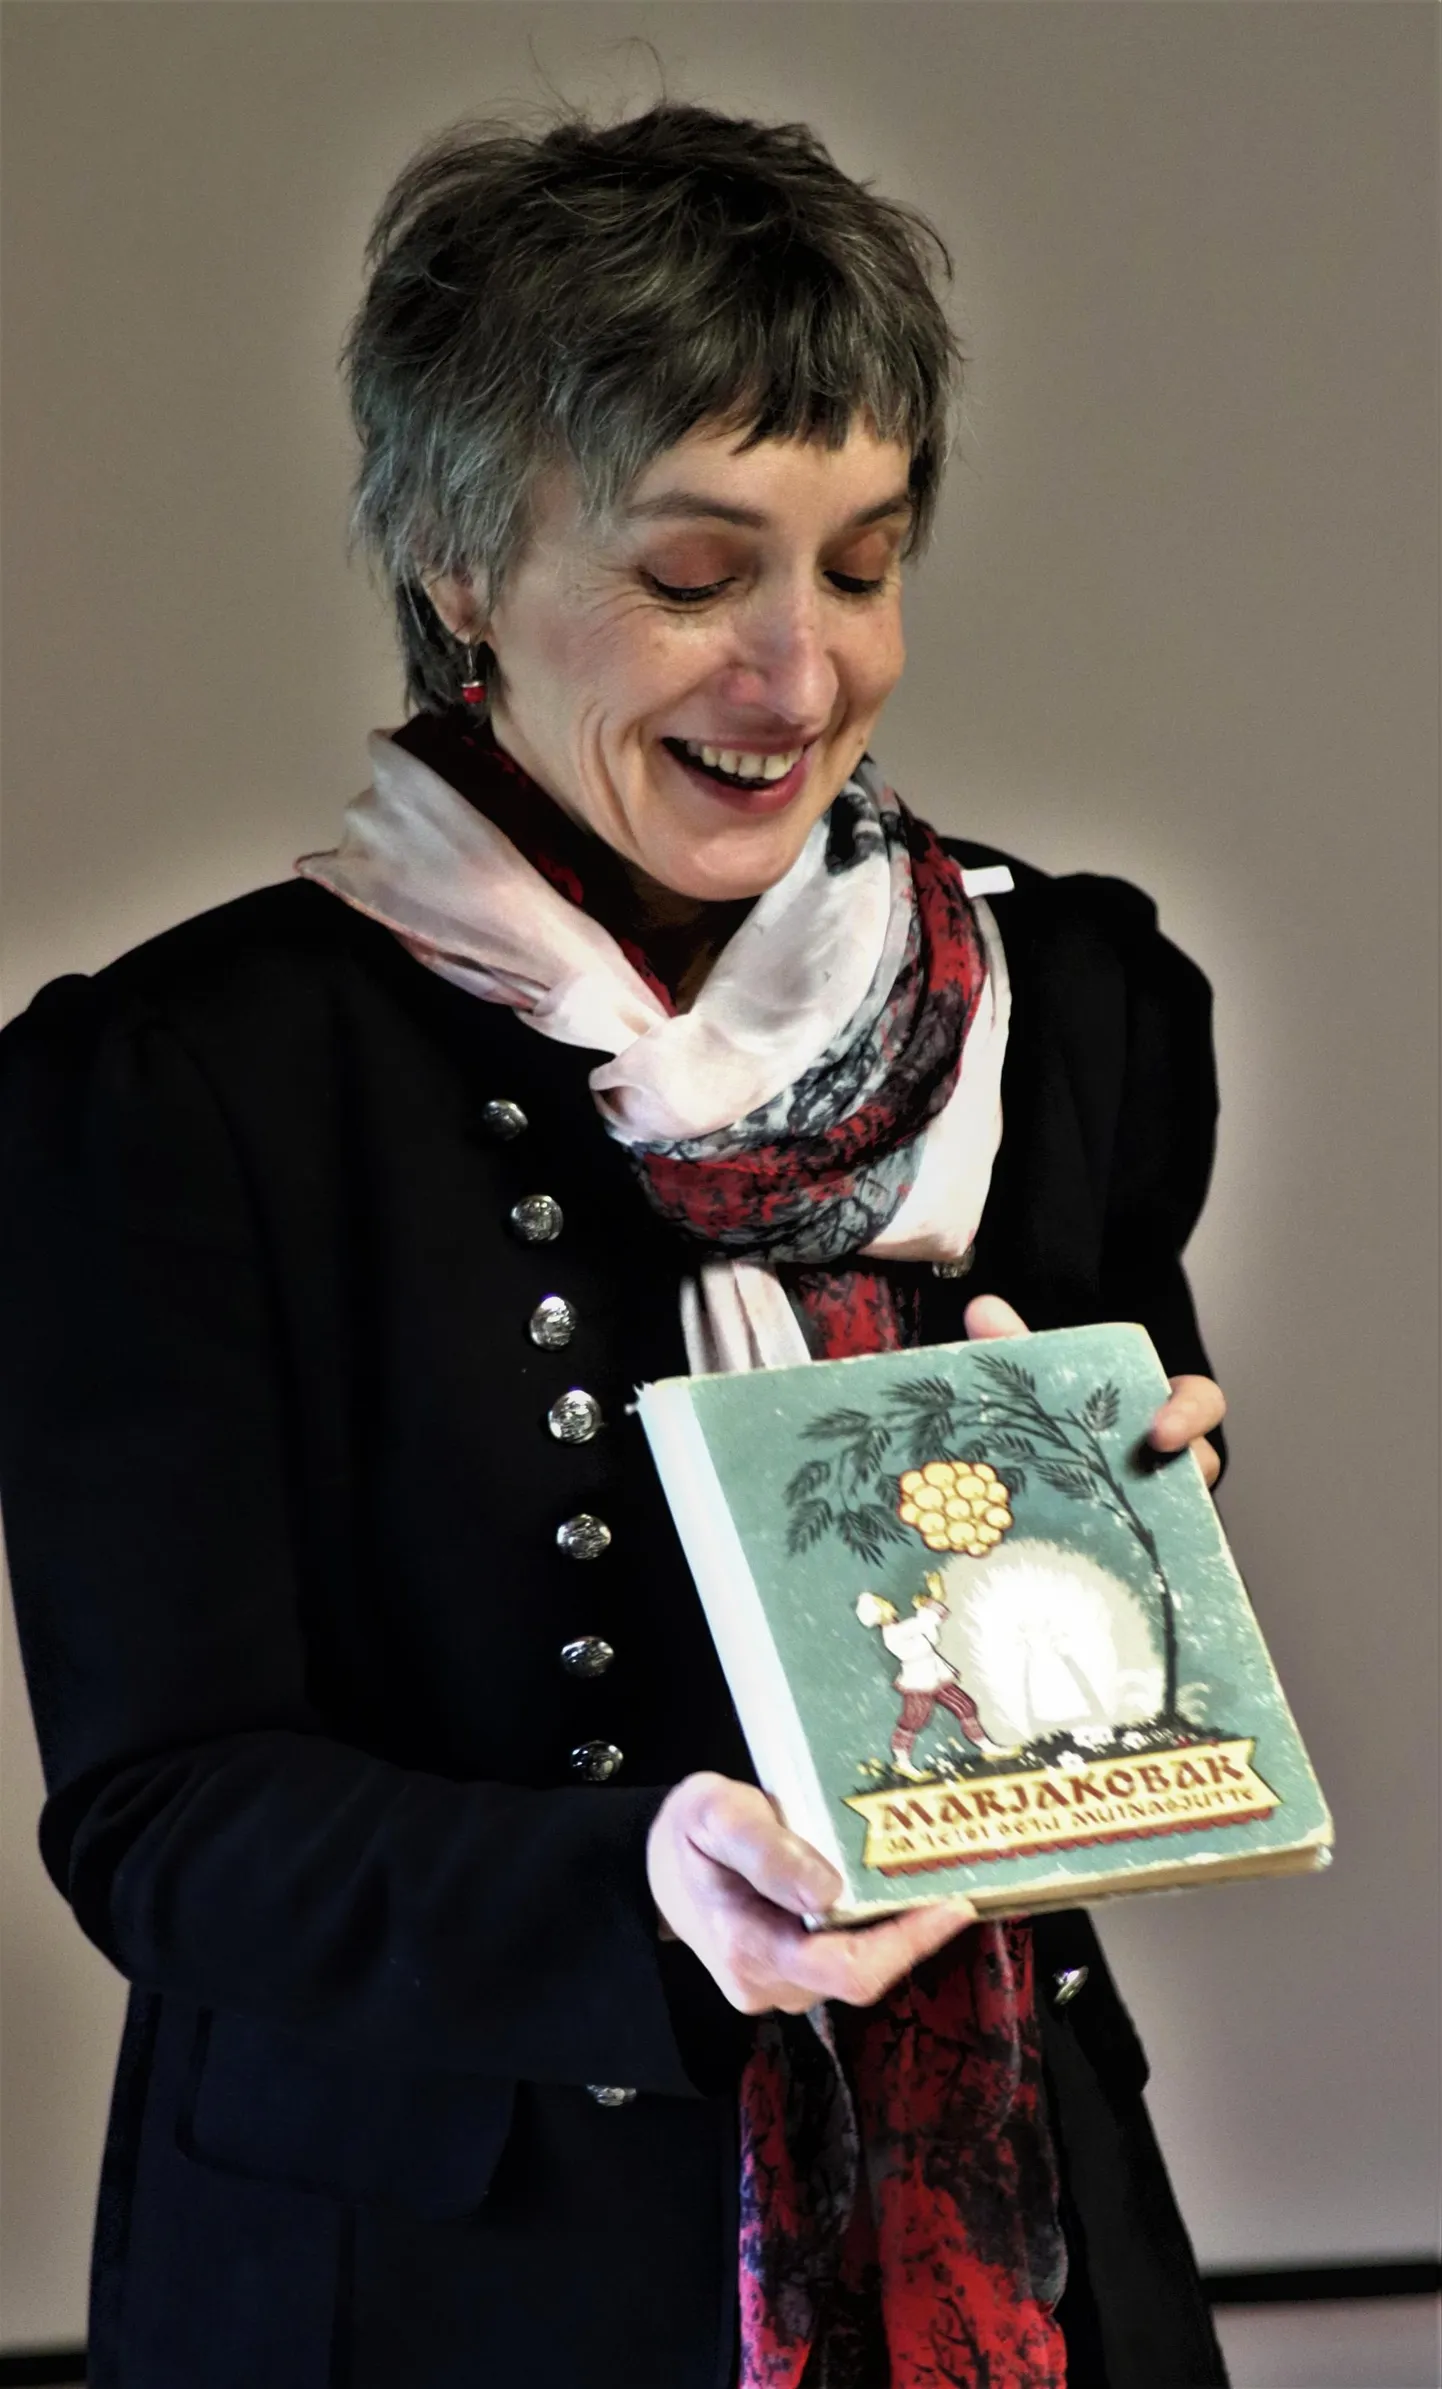 Väljakutse 11 x 11 autor jutuvestja Piret Päär tutvustab esimest väljakutseraamatut "Marjakobar ja teisi setu muinasjutte".